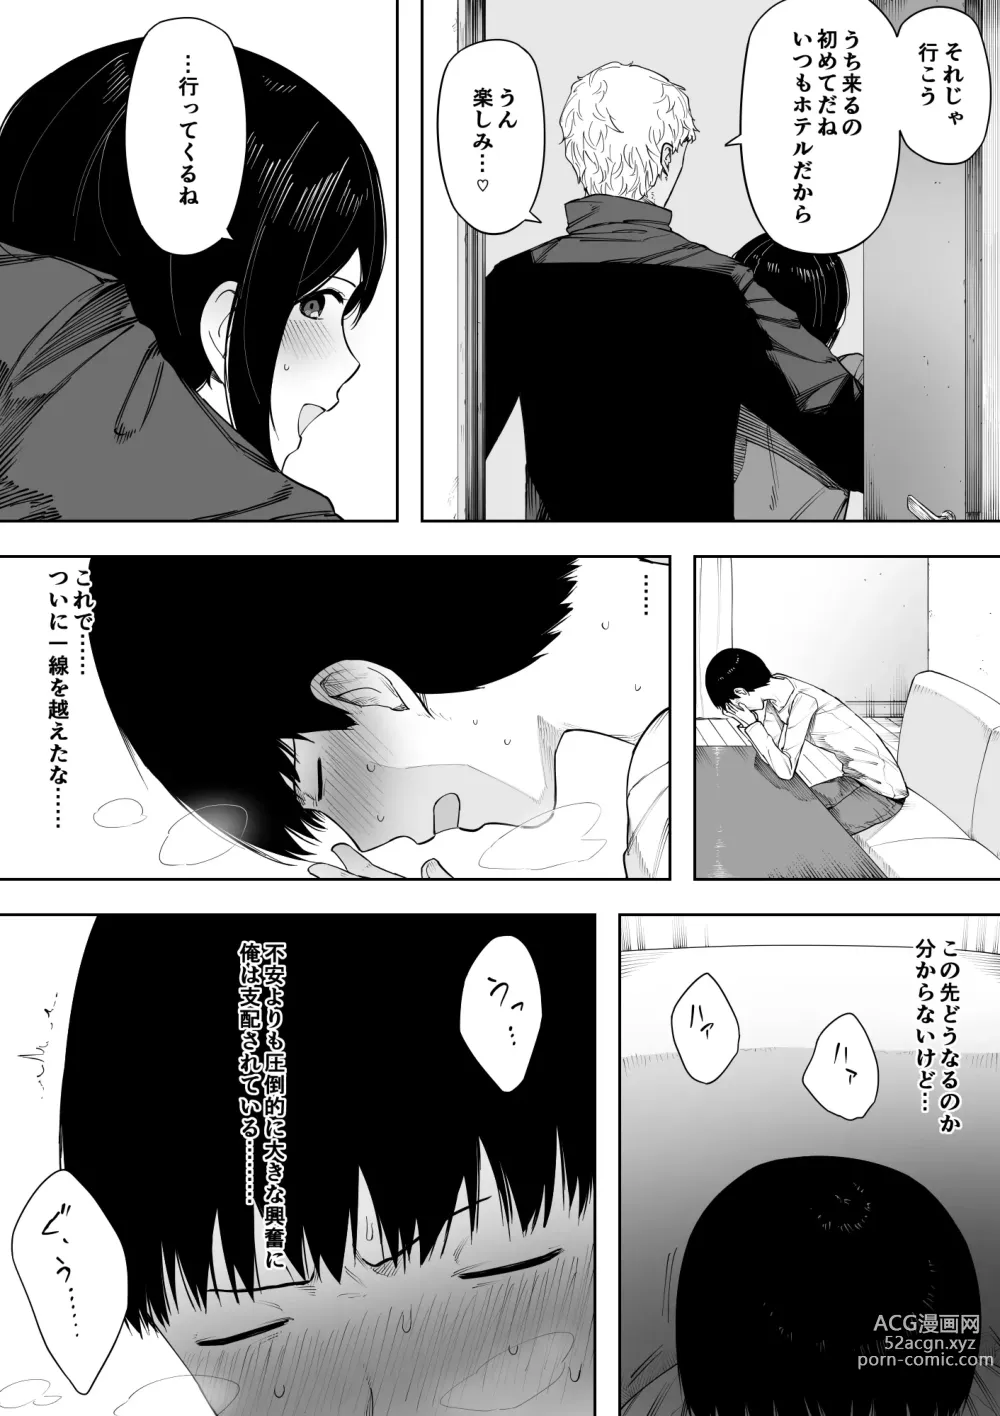 Page 51 of doujinshi Aisai, Doui no Ue, Netorare 3 ~Ogawa-ke no Baai~